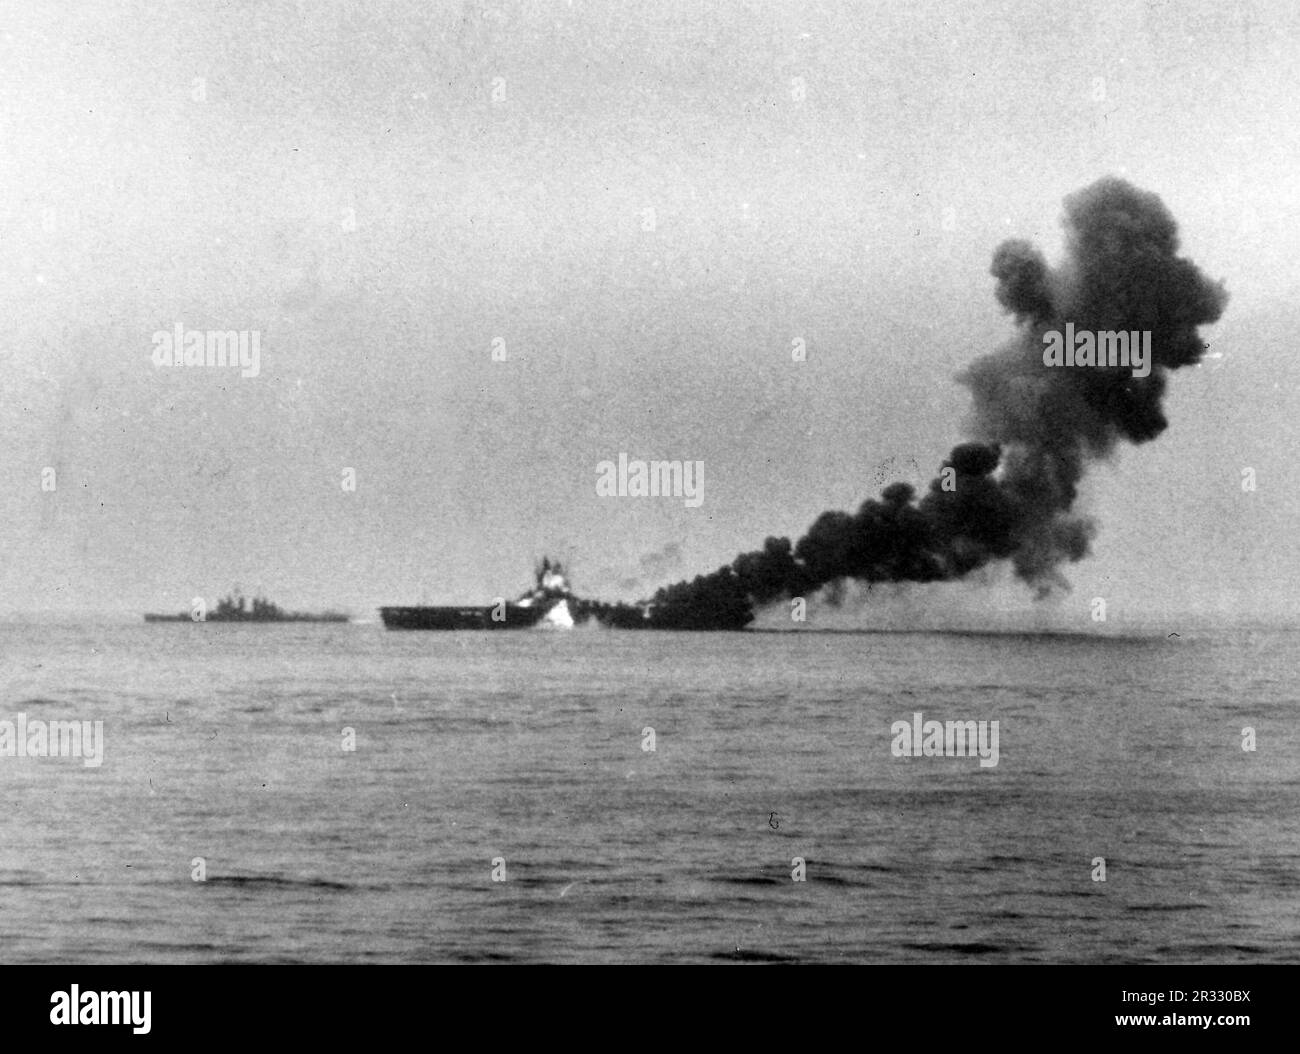 Un secondo kamikaze giapponese, un Mitsubishi A6M Zero pilotato da Ensign Kiyoshi Ogawa, colpisce gli Stati Uniti Portaerei Navy USS Bunker Hill (CV-17) a bordo delle navi, circa 1005 ore, 11 maggio 1945. La nave sta già bruciando da un colpo di kamikaze 30 secondi prima. Lo sciopero ha catturato aerei completamente alimentati e armati sul ponte e ha iniziato incendi molto pericolosi. Anche se gravemente danneggiata, la nave non affondò e tornò negli Stati Uniti per la riparazione. La nave è stata smantellata nel 1966 e demolita nel 1973. Foto Stock